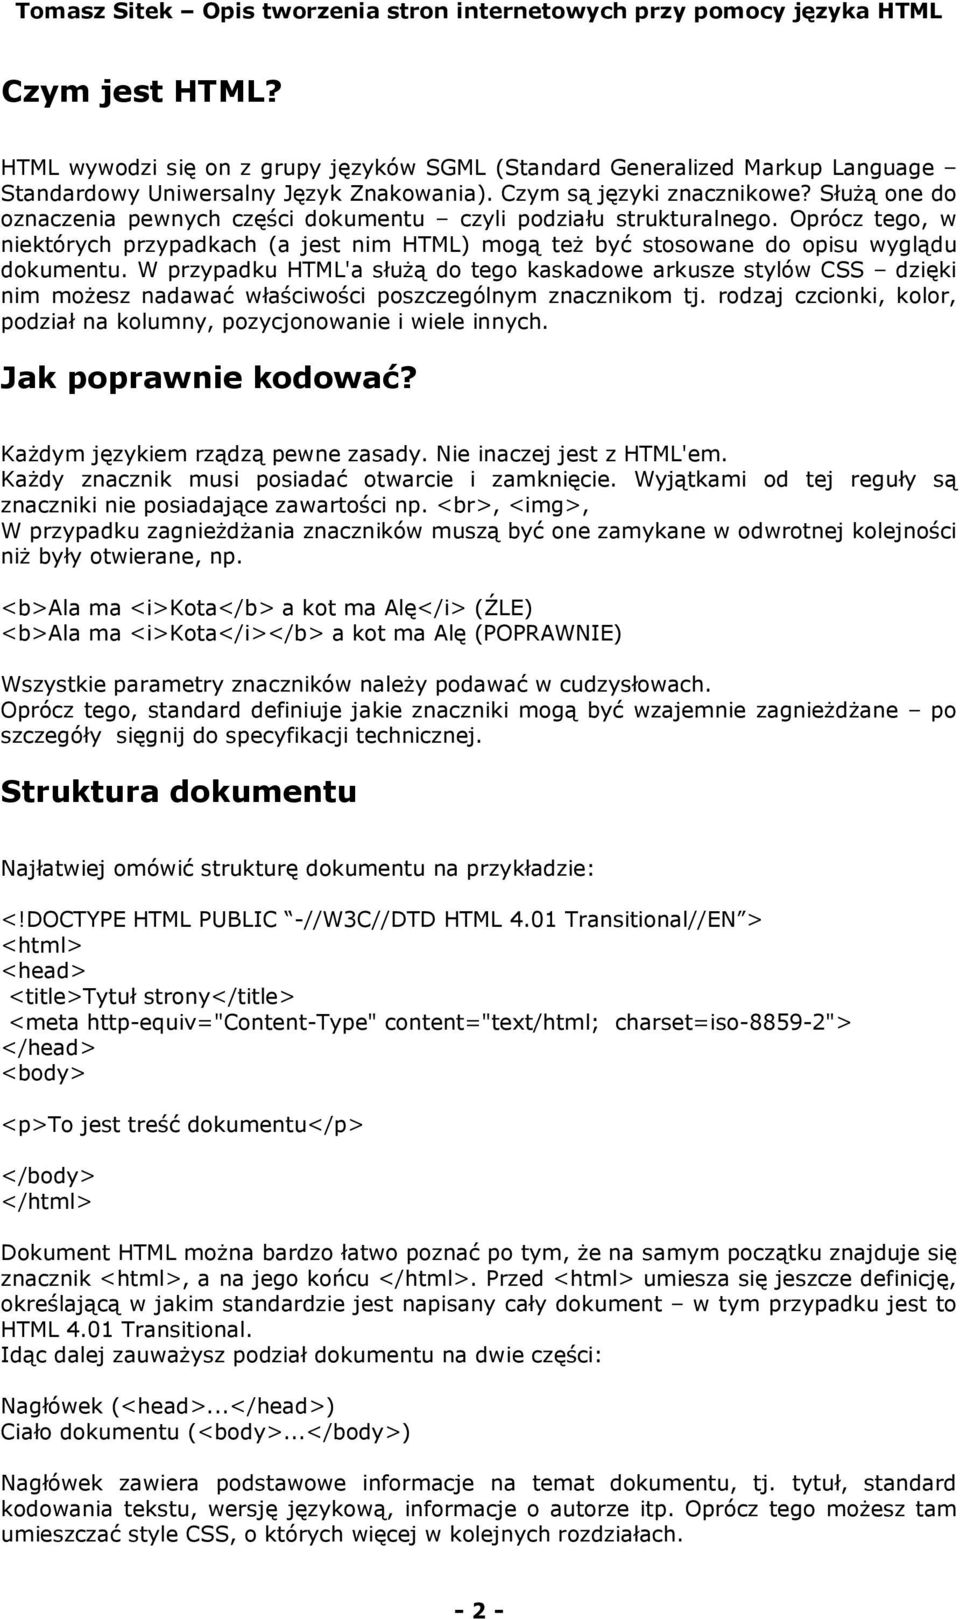 Opis tworzenia stron internetowych przy pomocy języka HTML - PDF Free  Download